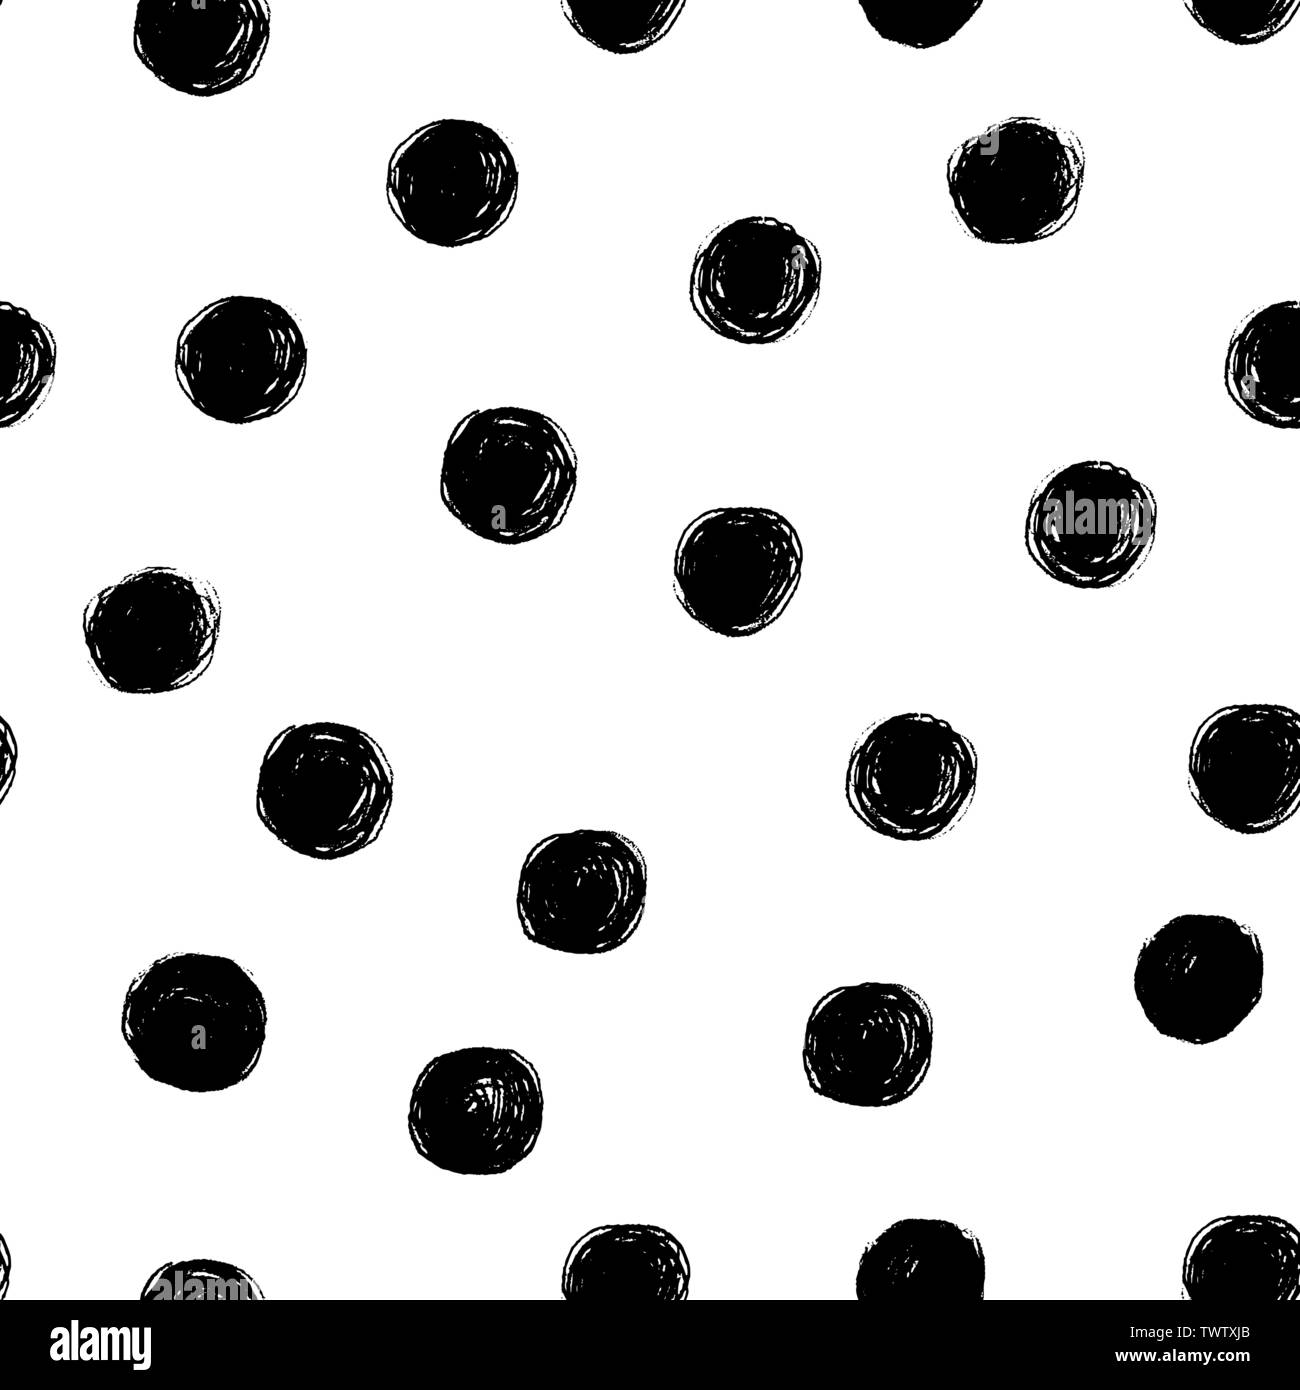 Vektor nahtlose Hand zeichnen Polka Dot Bürste schwarz-weißen Muster. Monochrome skandinavischen Hintergründe der einfachen Primitiven mit Punkten für textile Desig Stock Vektor